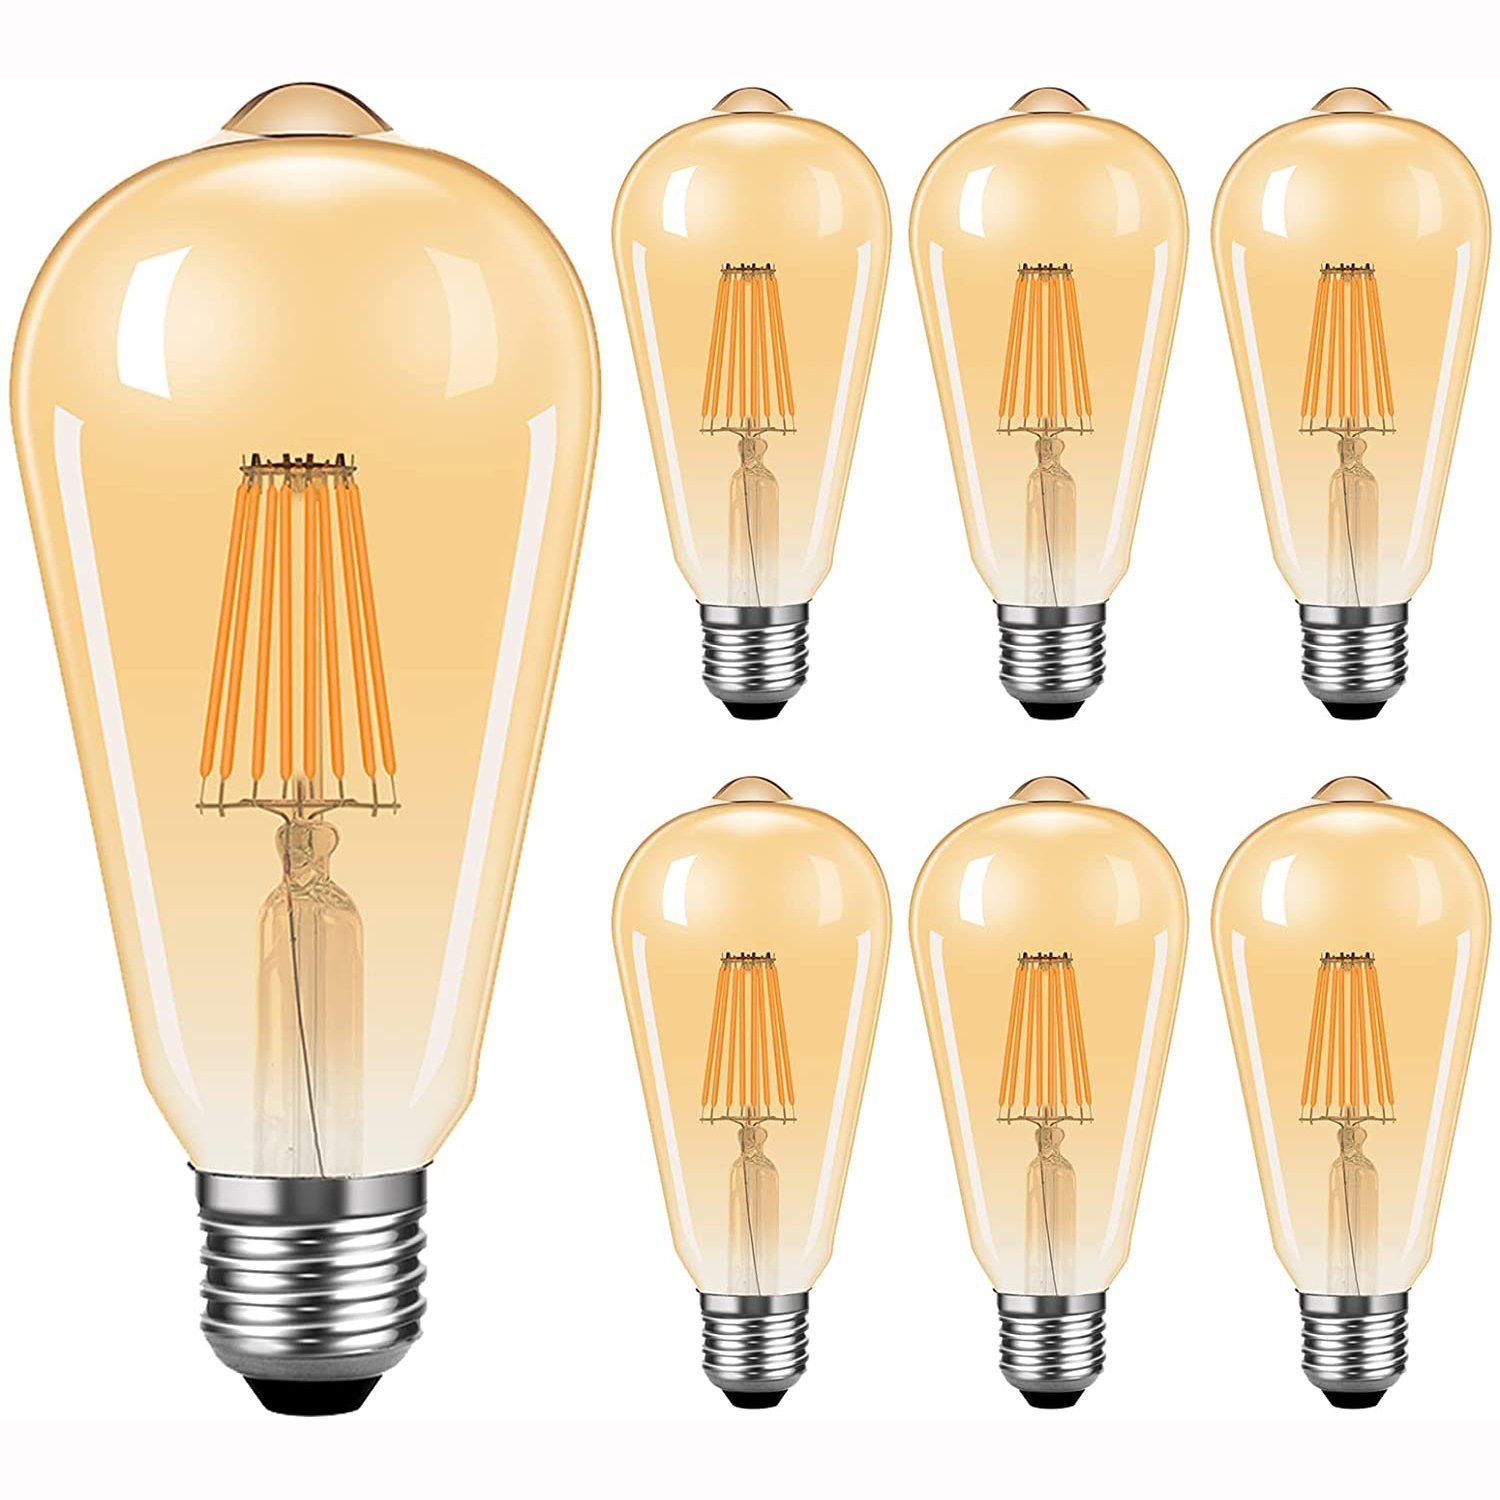 Leway LED Flutlichtstrahler »LED Lampen E27 Retro LED Glühbirnen Warmweiß  2300K Energiesparlampe Retro Glühbirne 360 ° Grad Strahlwinkel Birne 6er  Pack (8W)«